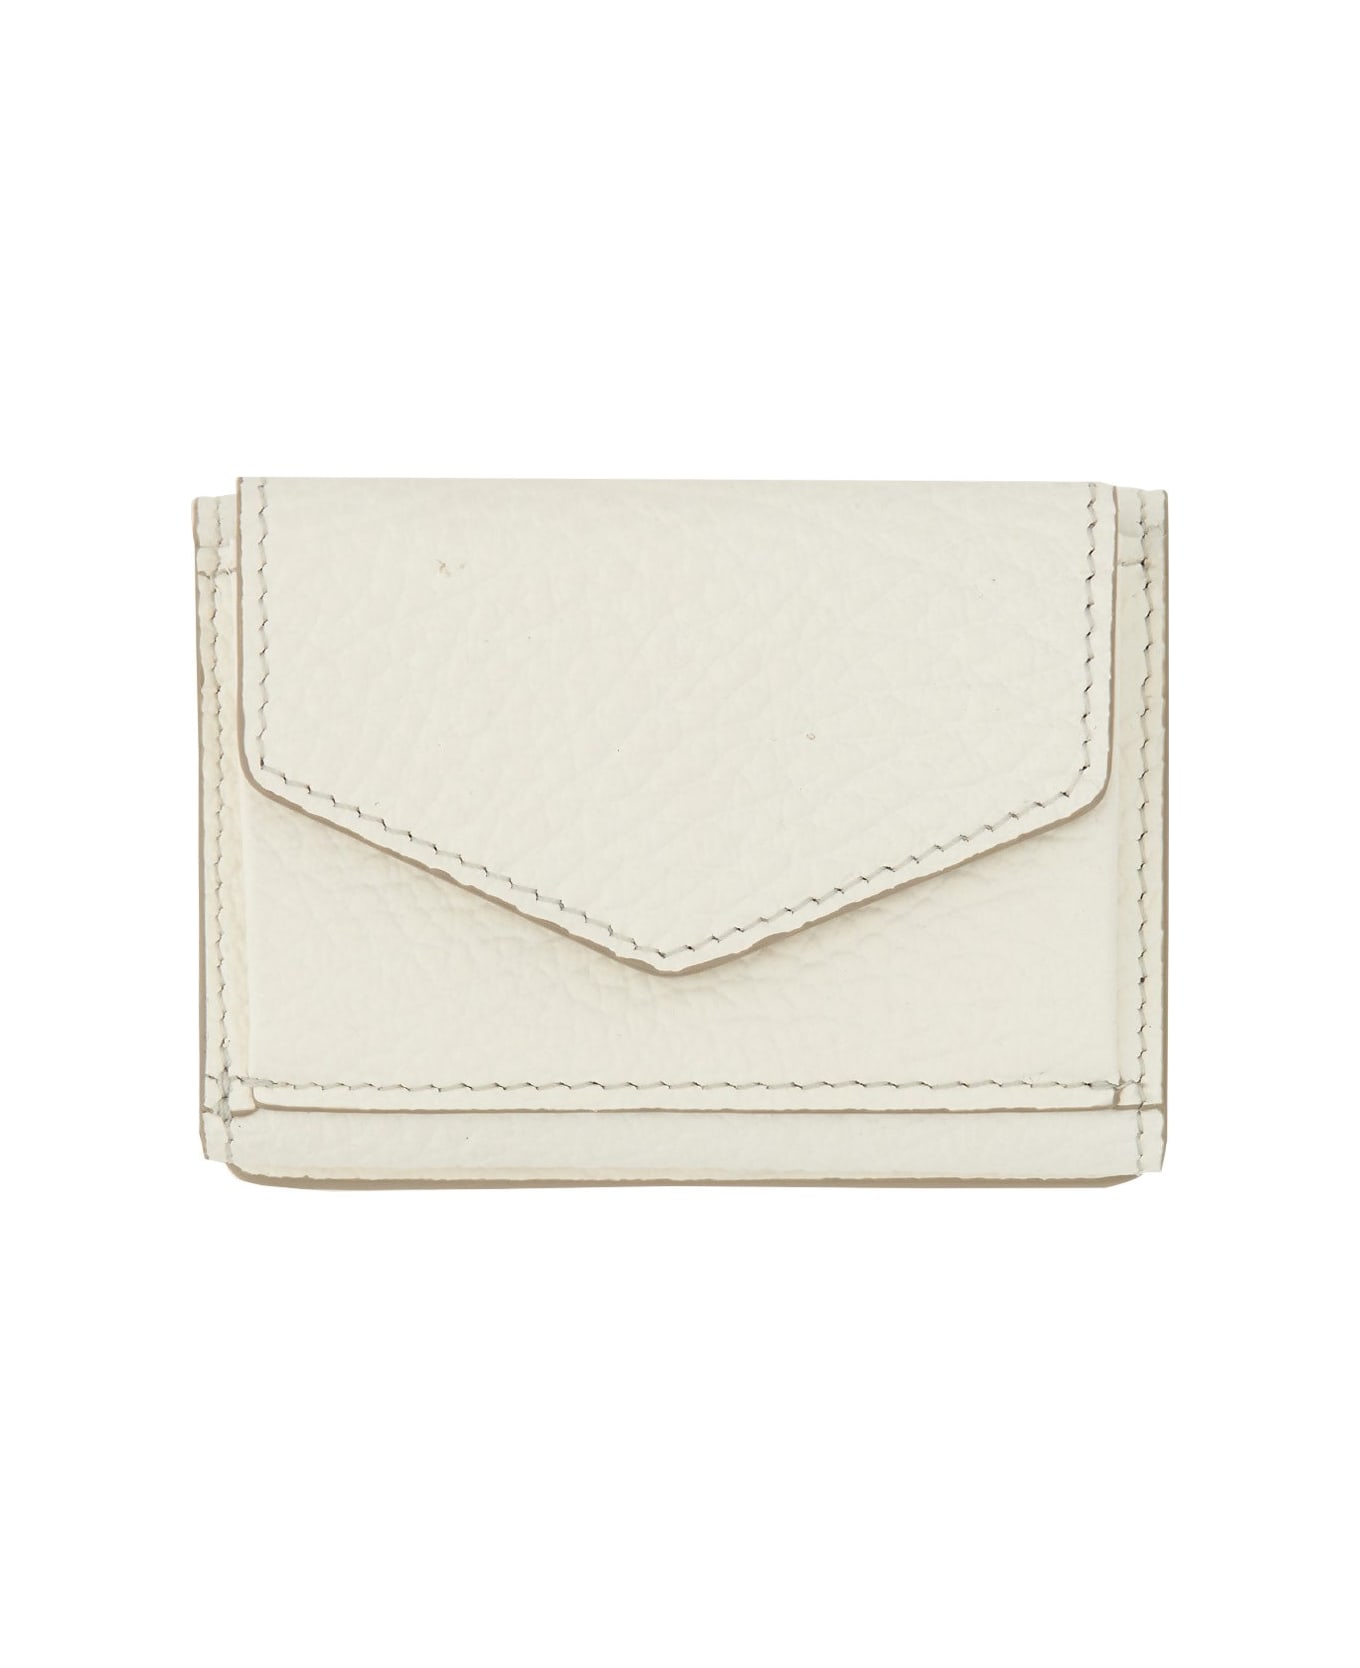 Maison Margiela Four Stitches Compact Wallet - BIANCO 財布